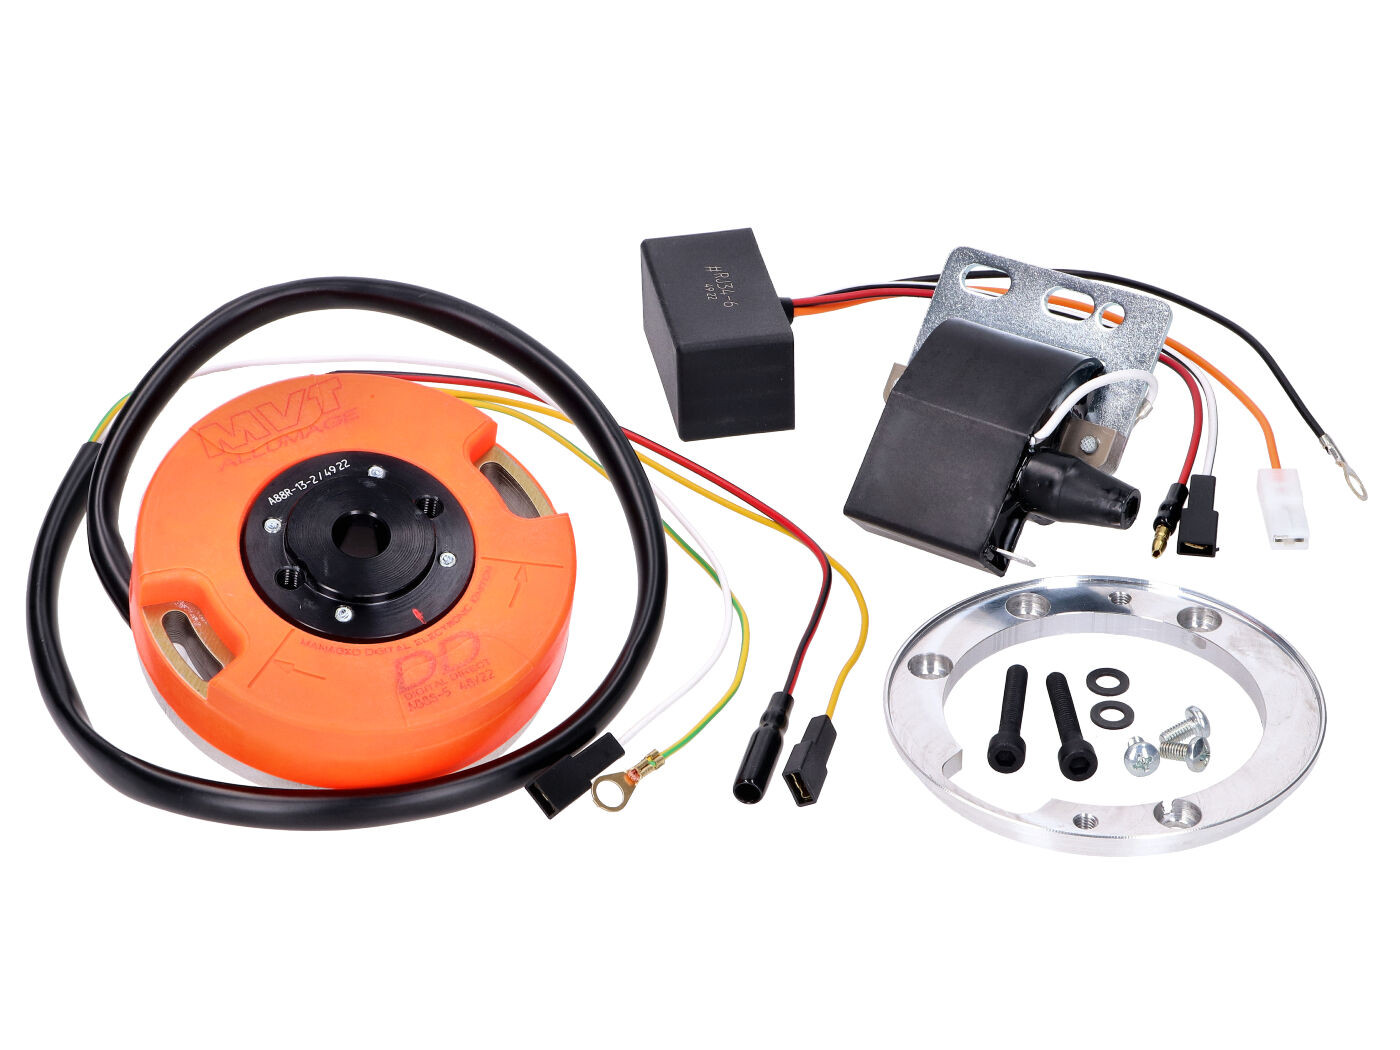 Belső rotoros gyújtás MVT Digital Direct lámpával a Puch Maxi számára